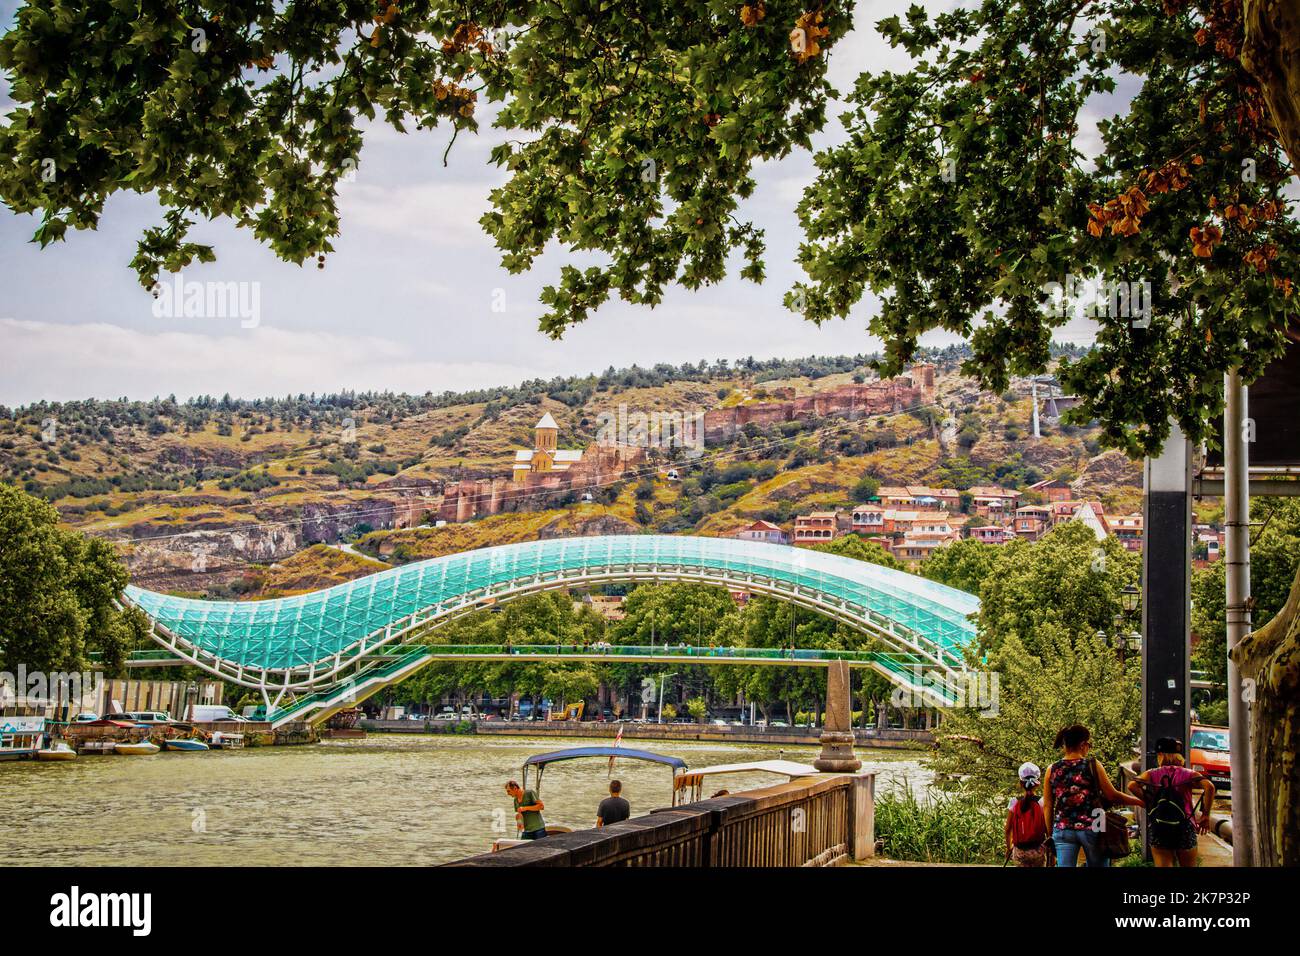 07 19 2019 Tbilisi Georgia - Vista panoramica del Ponte della Pace con funivie che viaggiano su e giù per la fortezza di Narikala e barche e barcaioli sul fiume Foto Stock